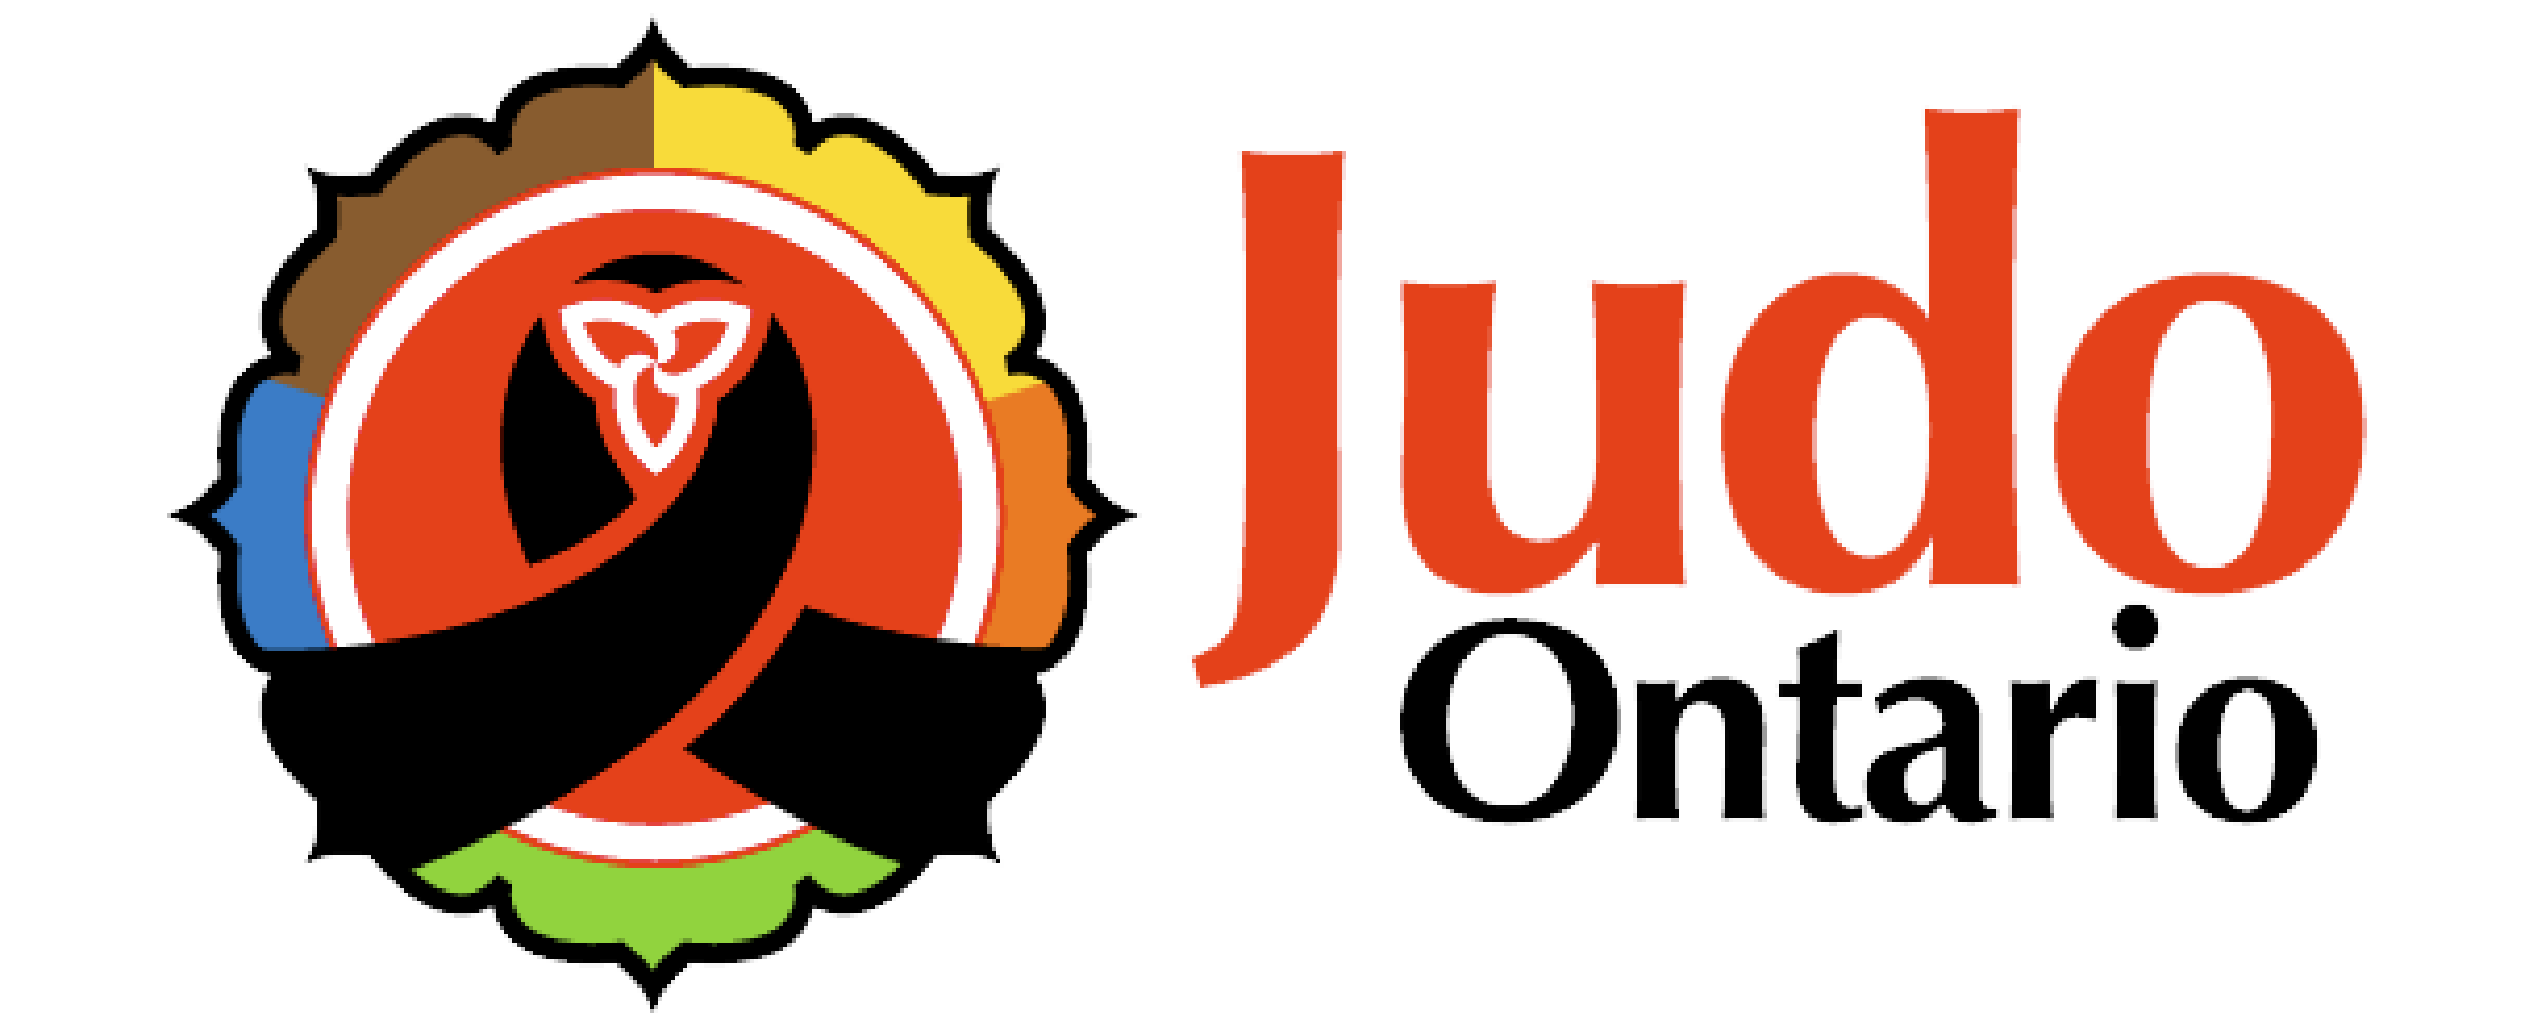 Logo rouge, jaune, orange, vert, bleu, brun et noir de judo Onatario